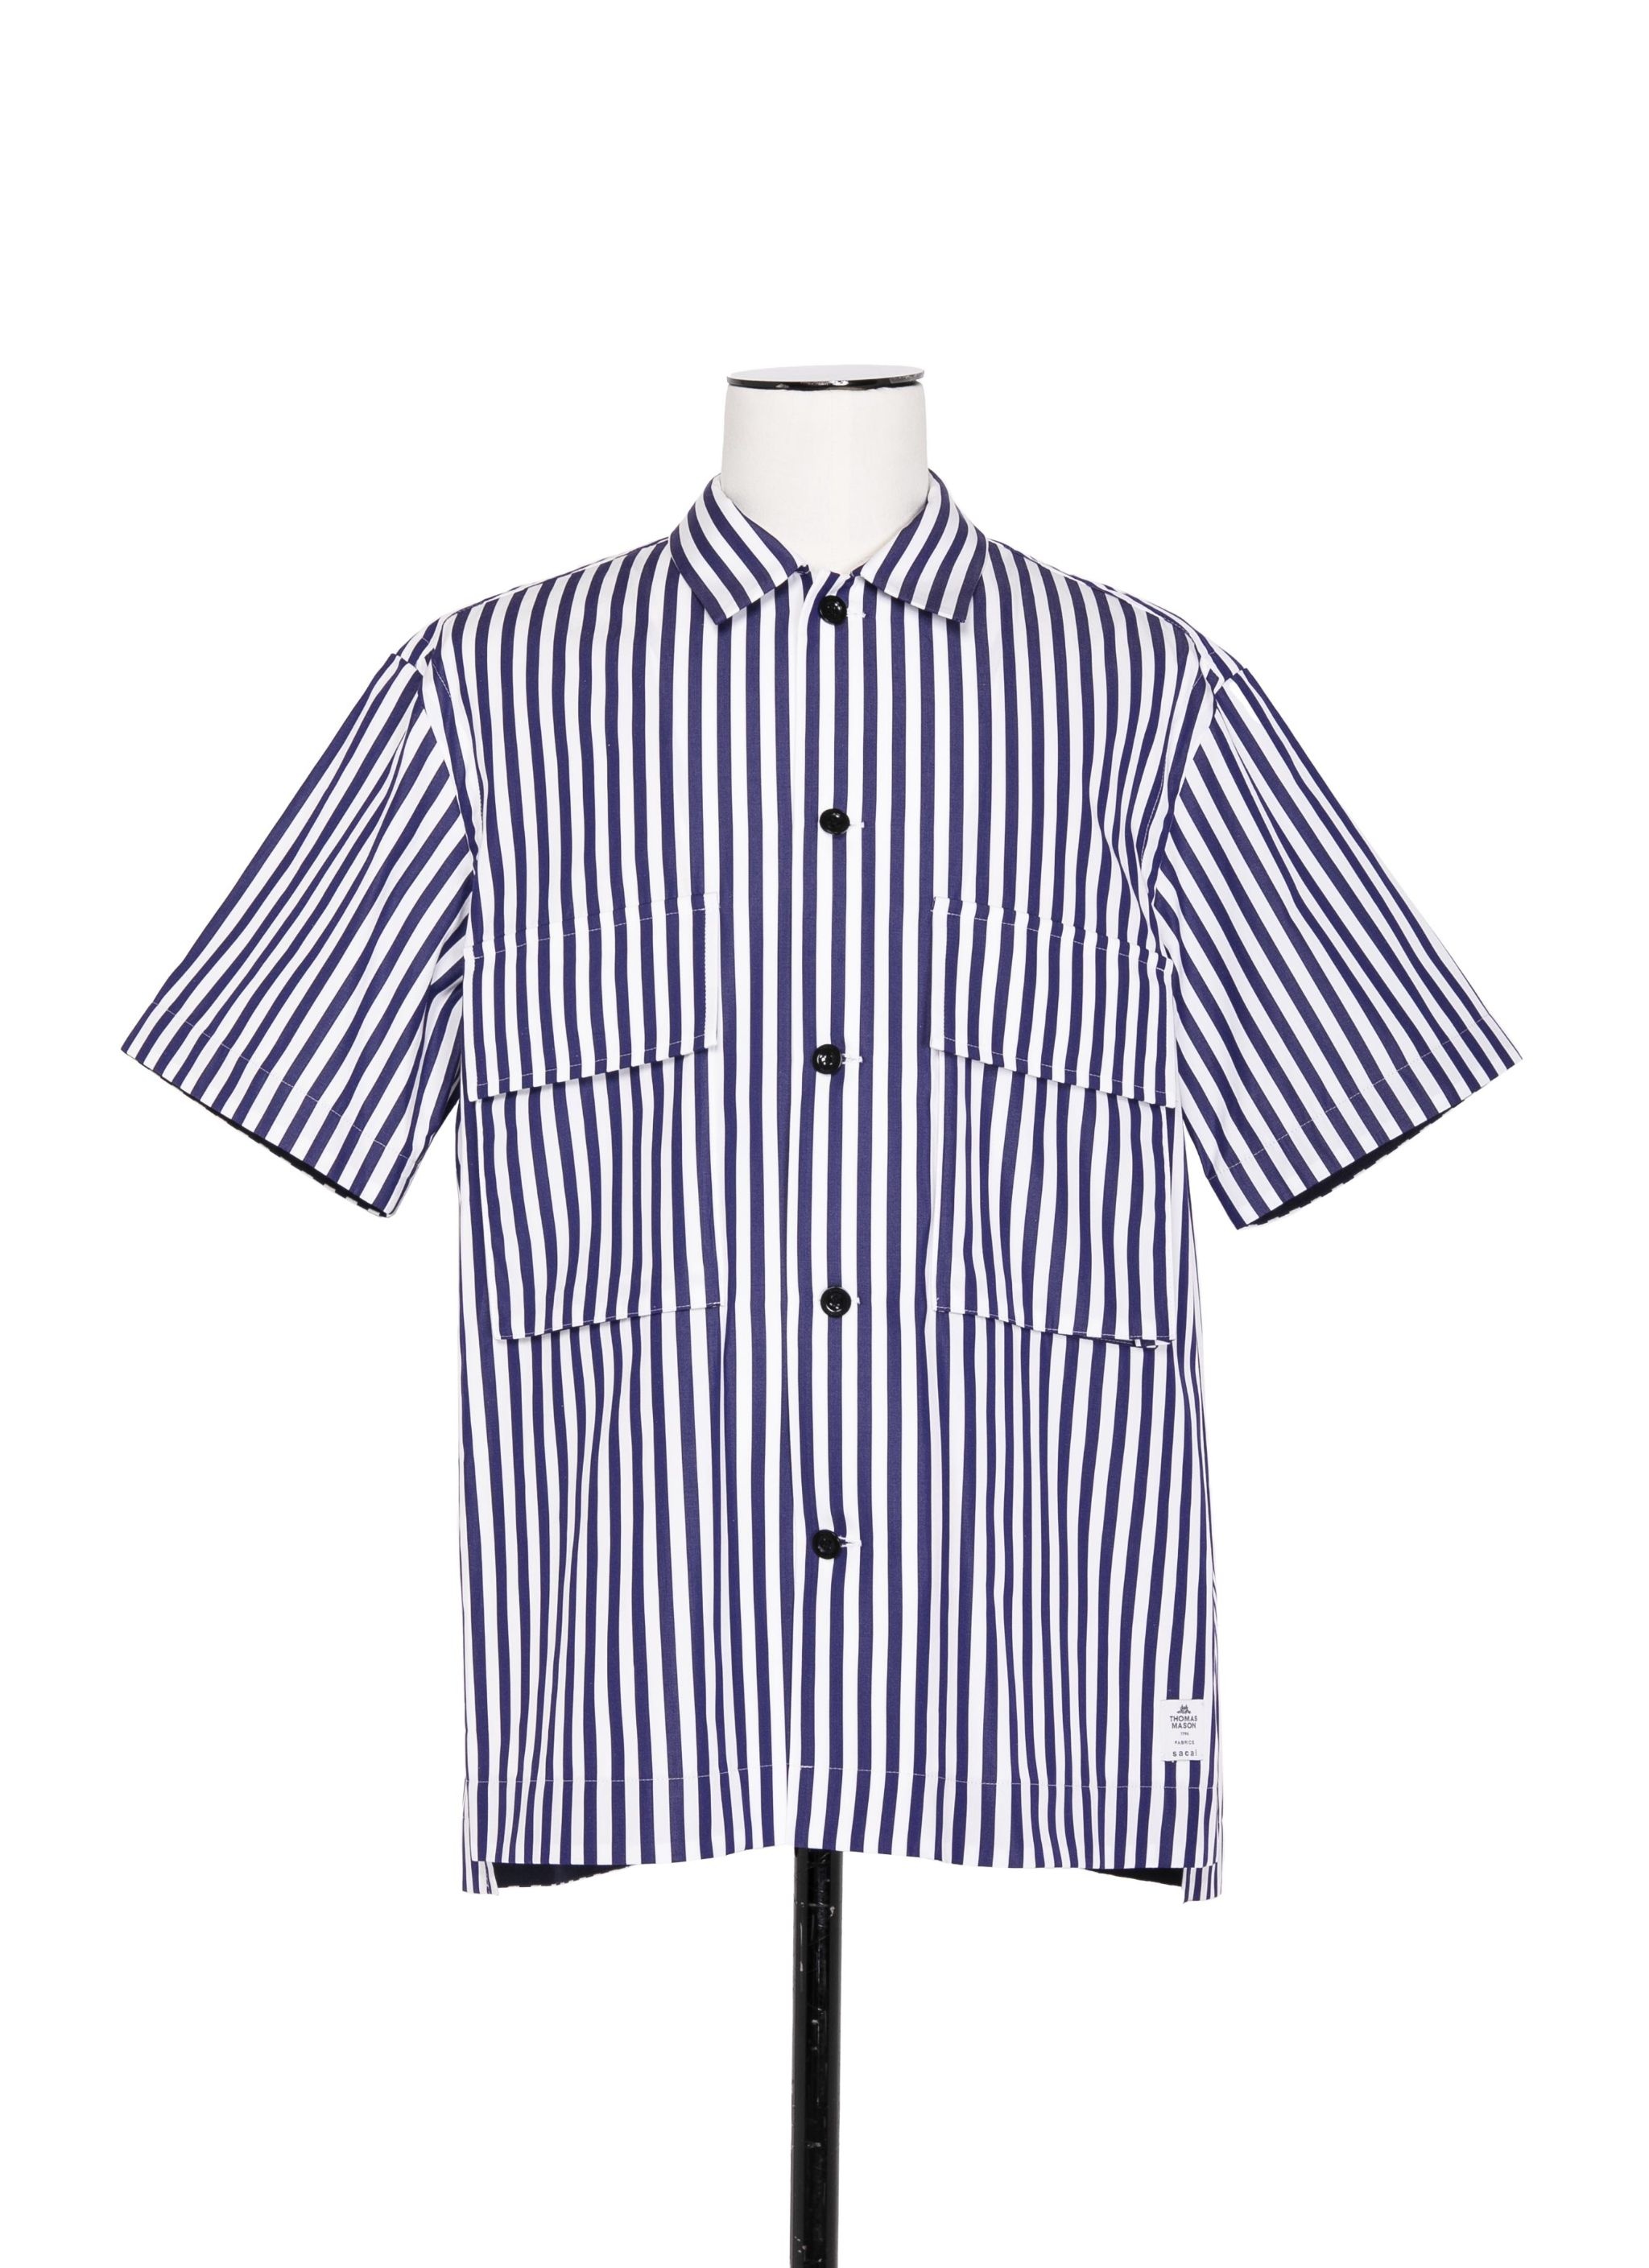 Thomas Mason Cotton Poplin Shirt - 1